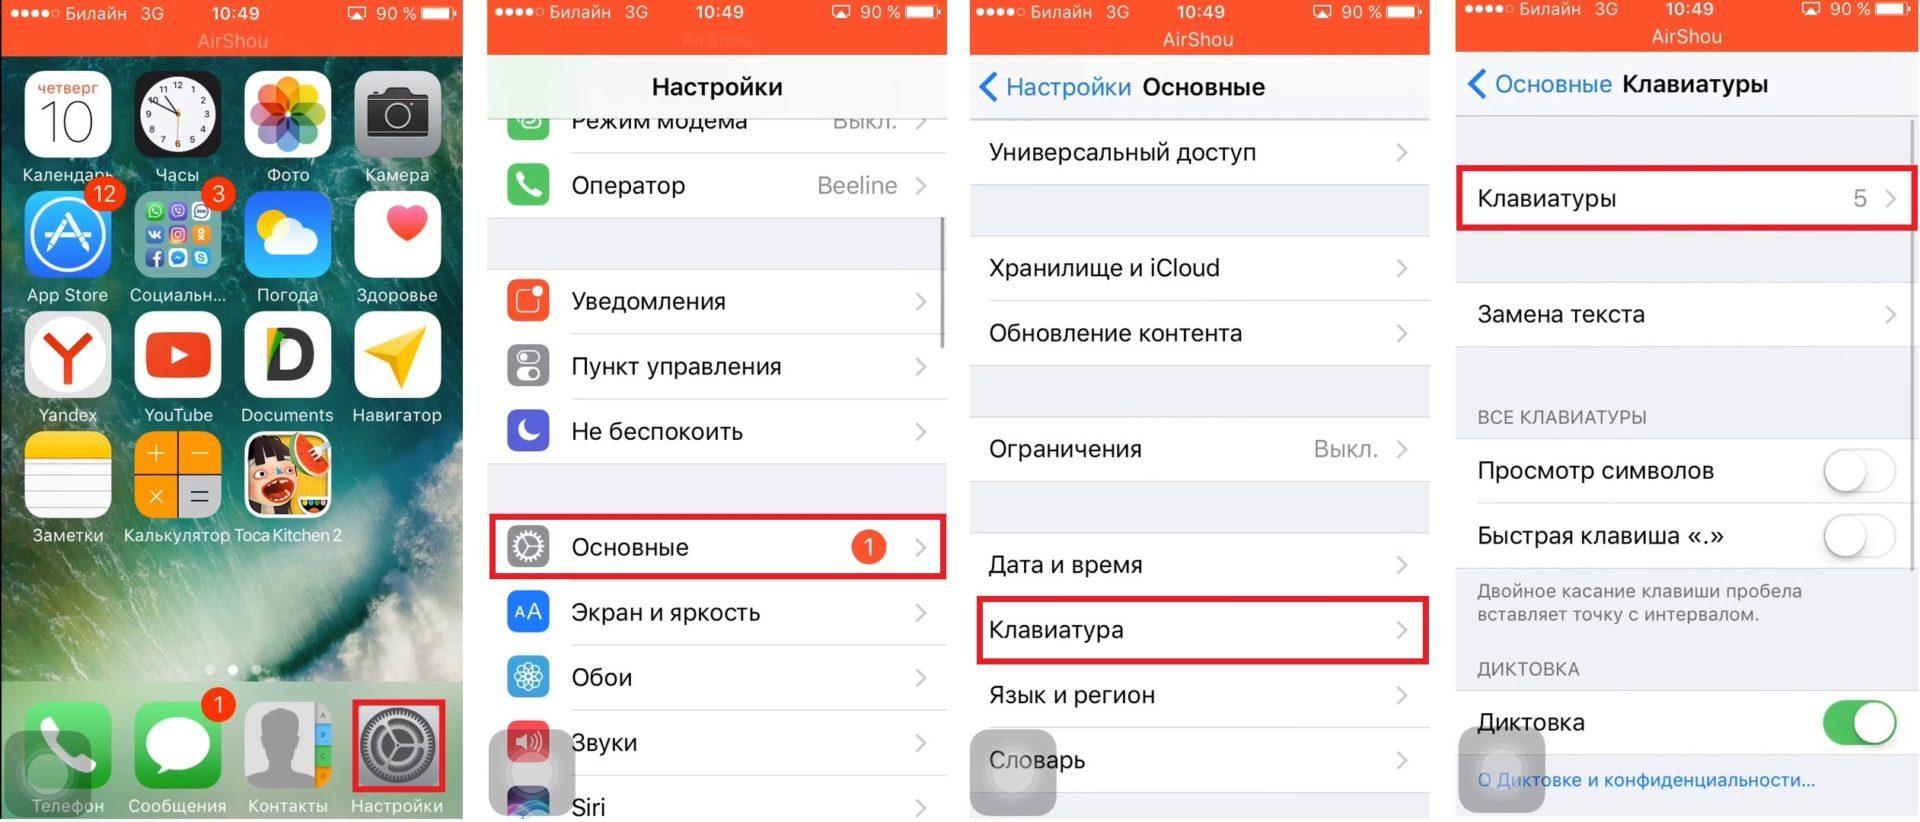 Как телеграмм перевести на русский язык на айфоне фото 91